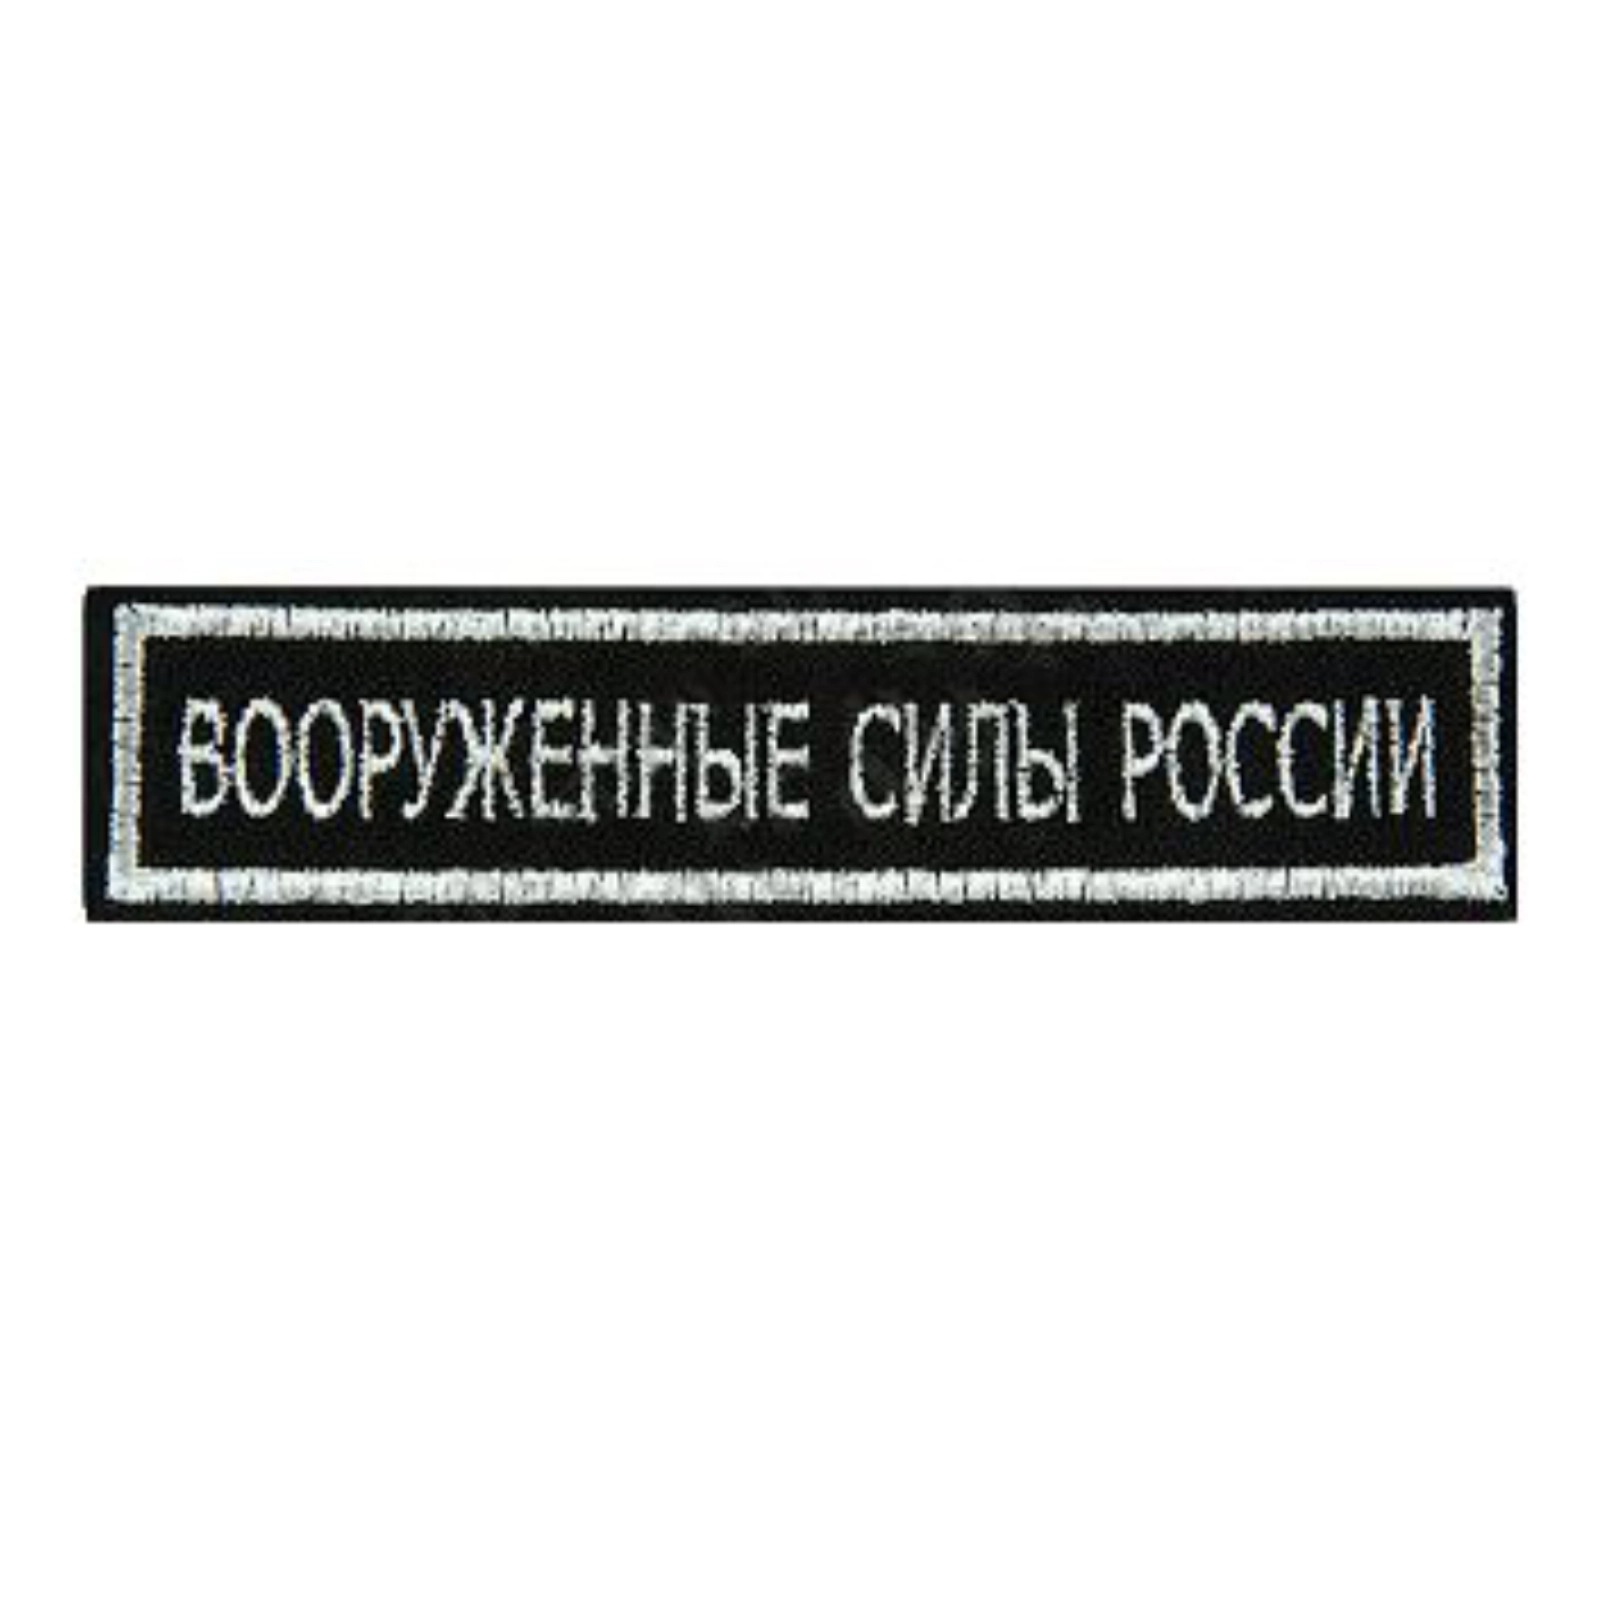 Нашивка ( шеврон ) на грудь Вооруженные силы России 12,5х2,5 на липучке вышитая полевая серебристый кант цвет черный (2501135)